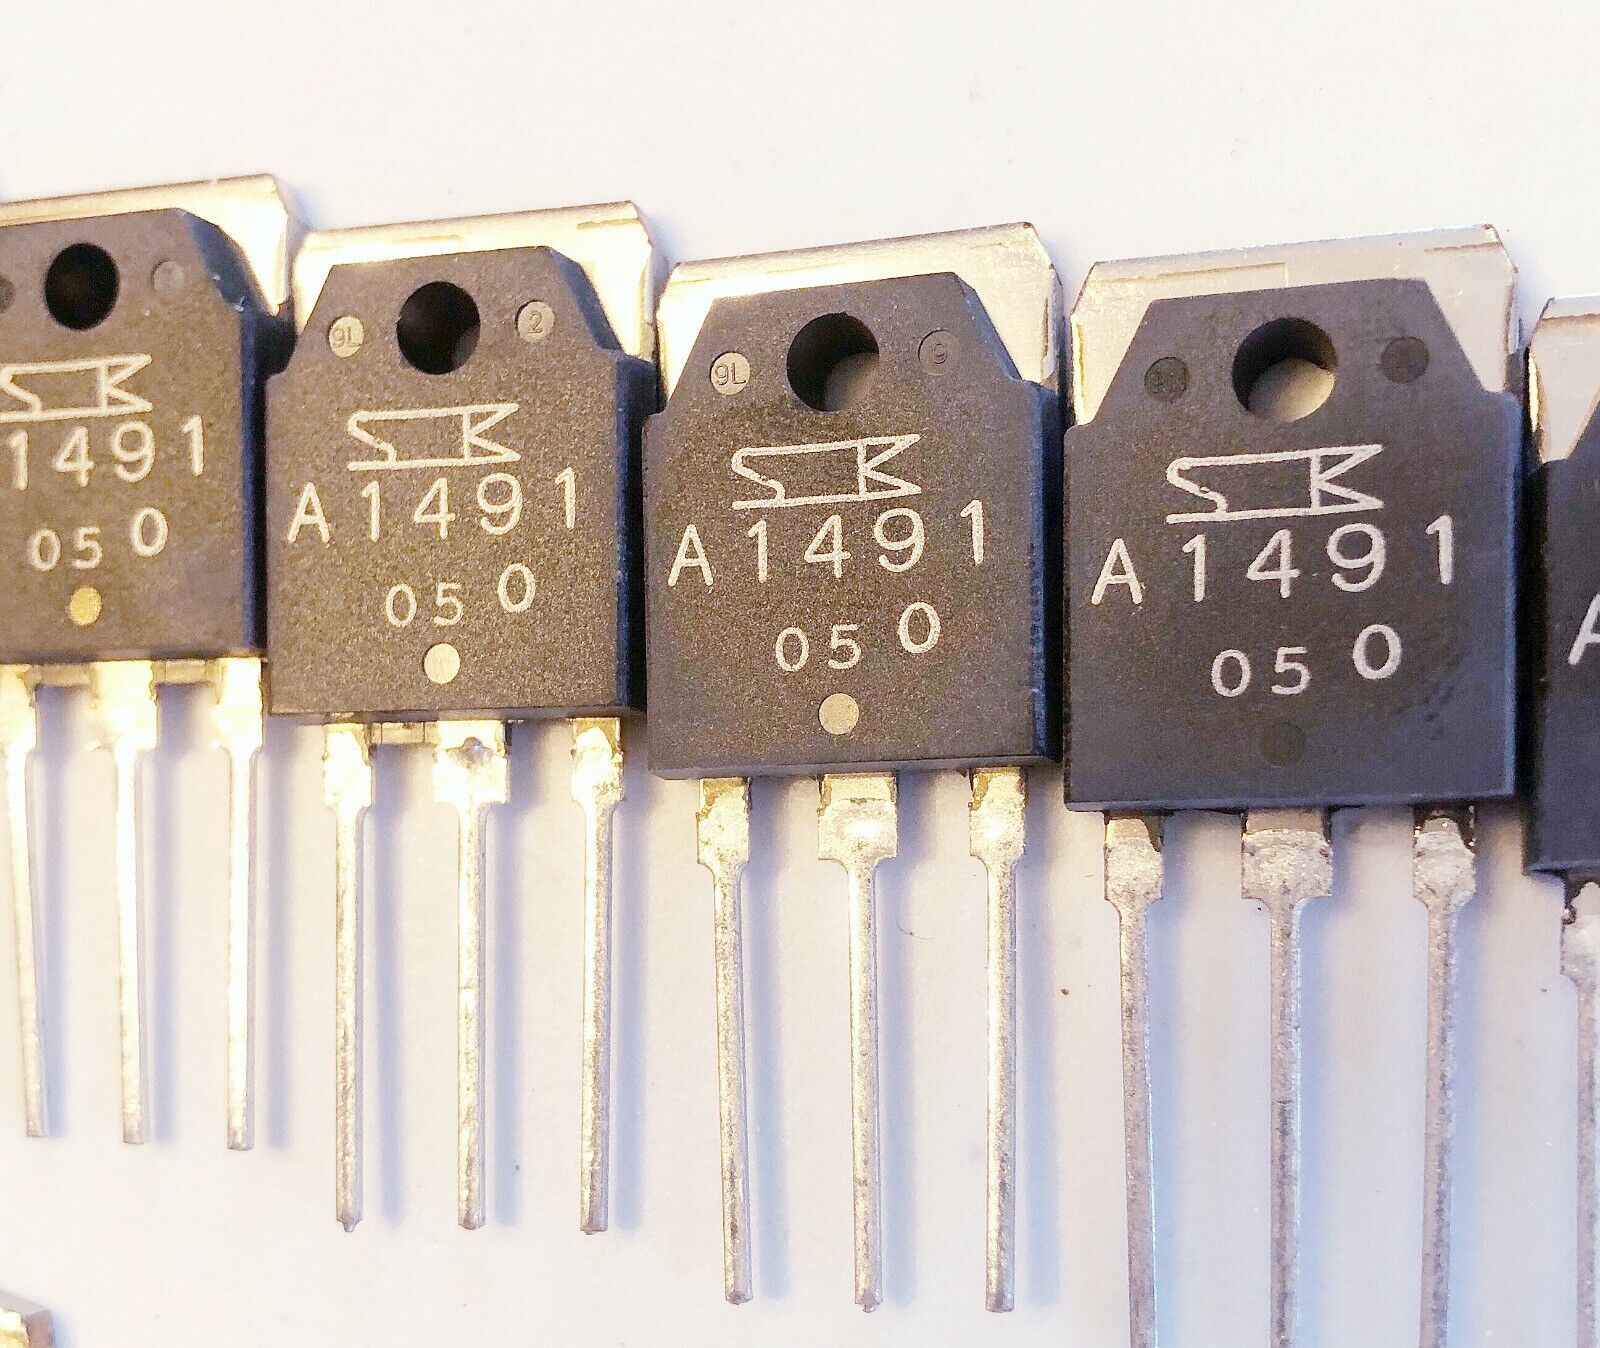 2 pcs SANKEN 2SA1491 A1491 PNP Bipolar Power Transistor -140V  -10A  100W